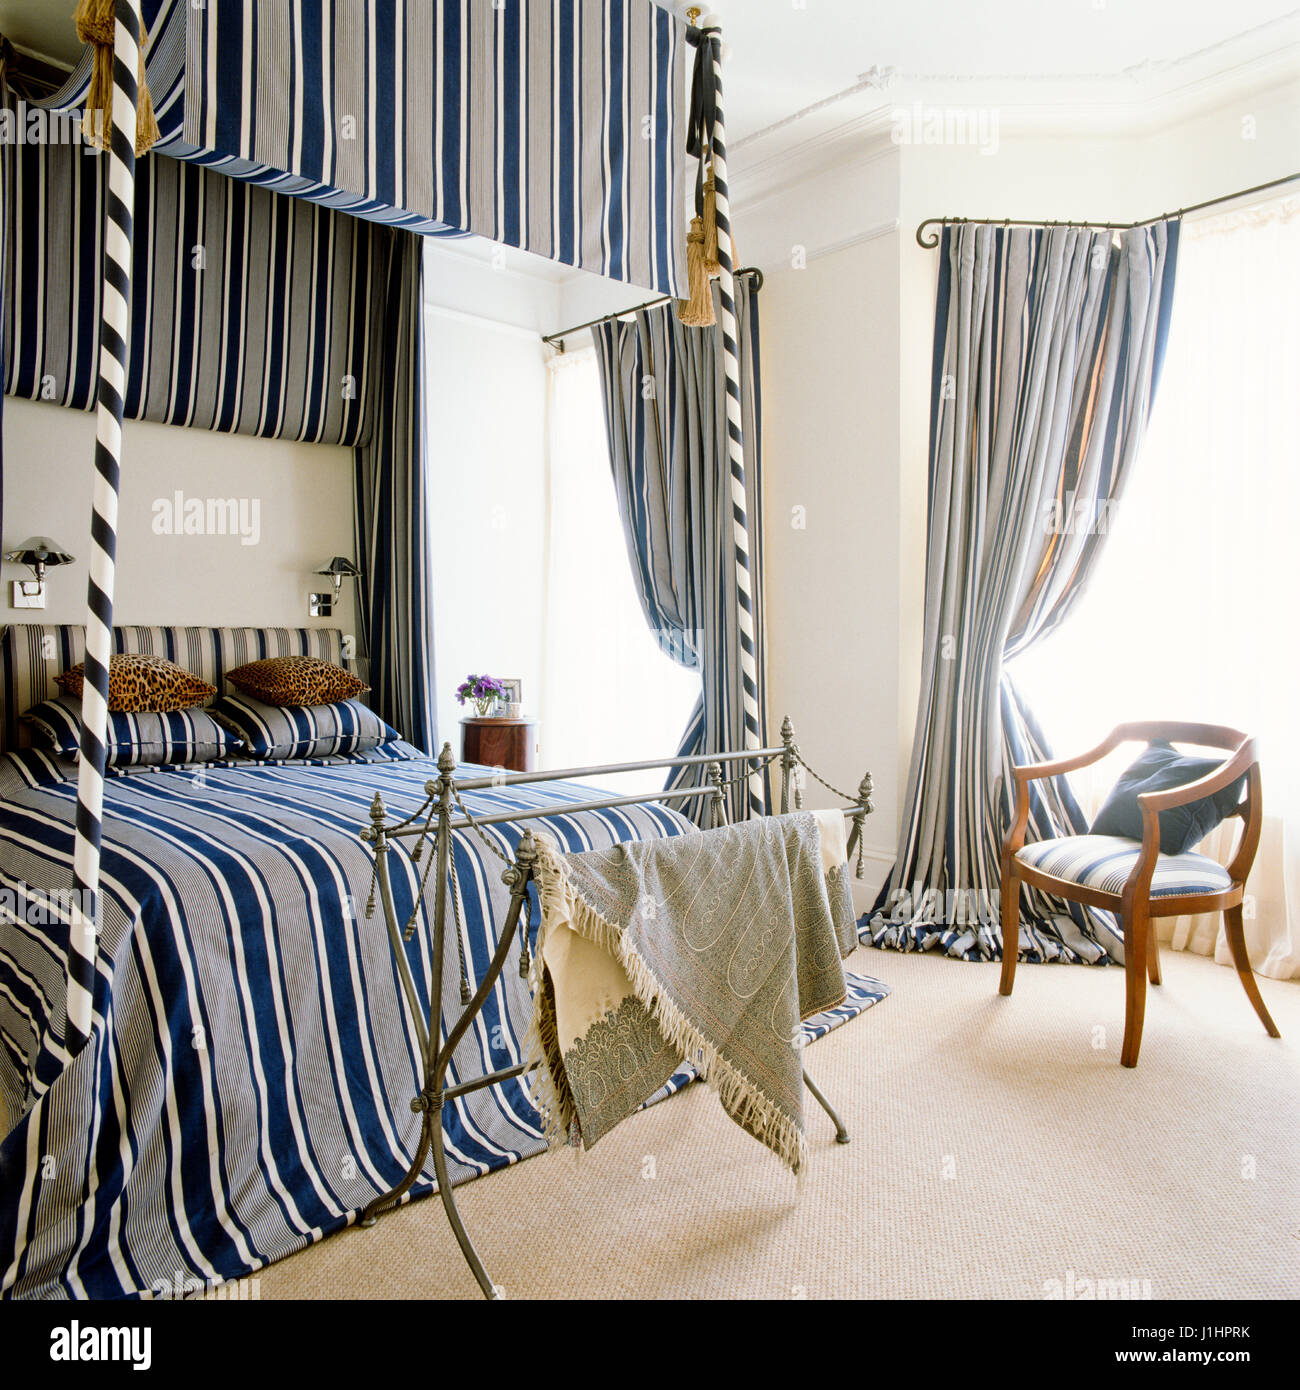 Striped letto a baldacchino. Foto Stock